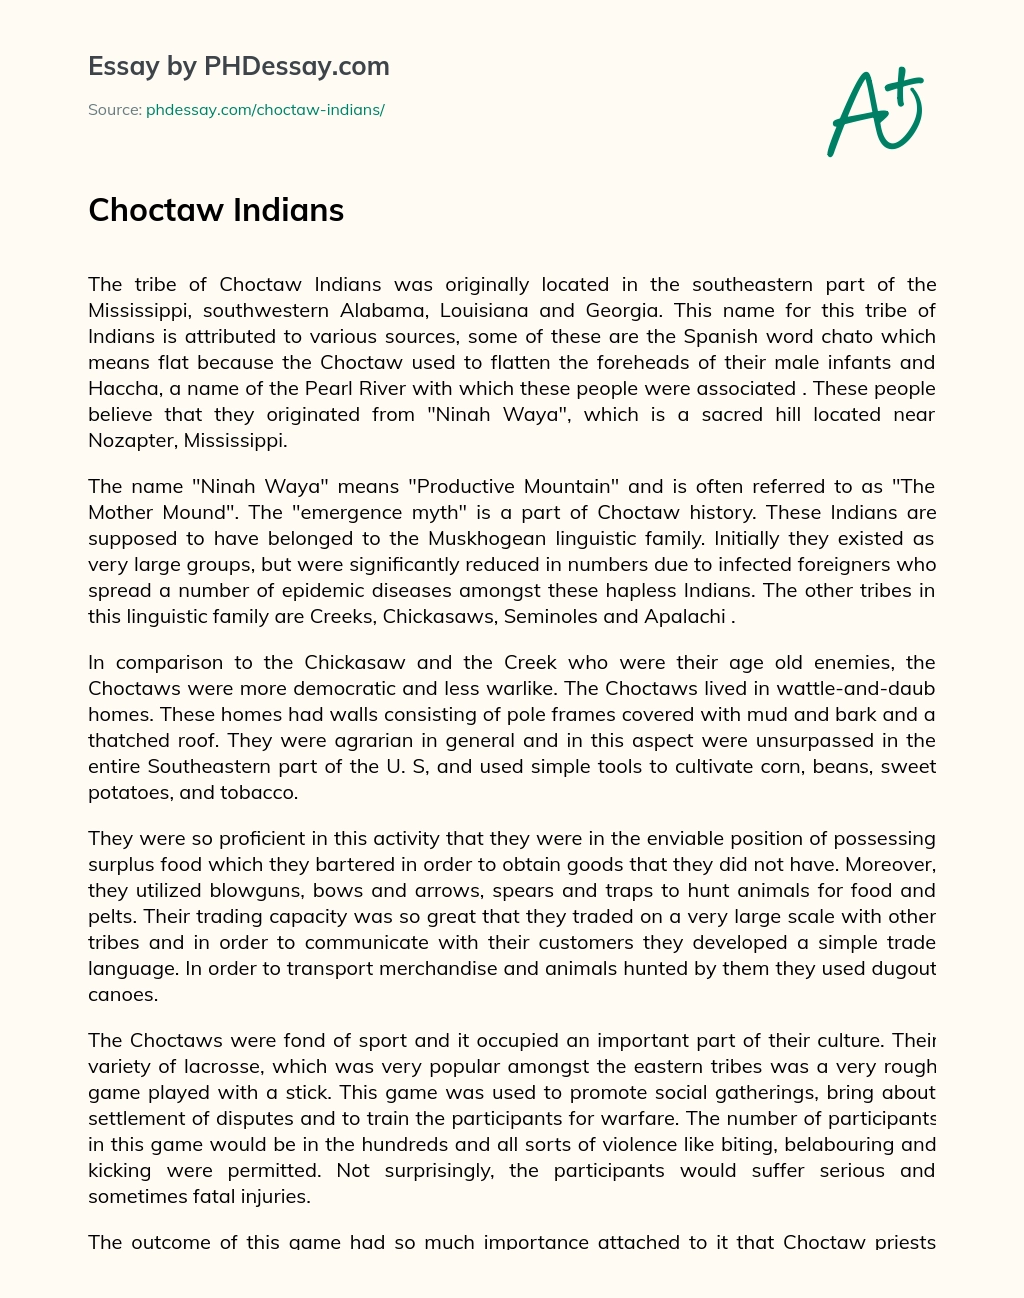 Choctaw Indians essay